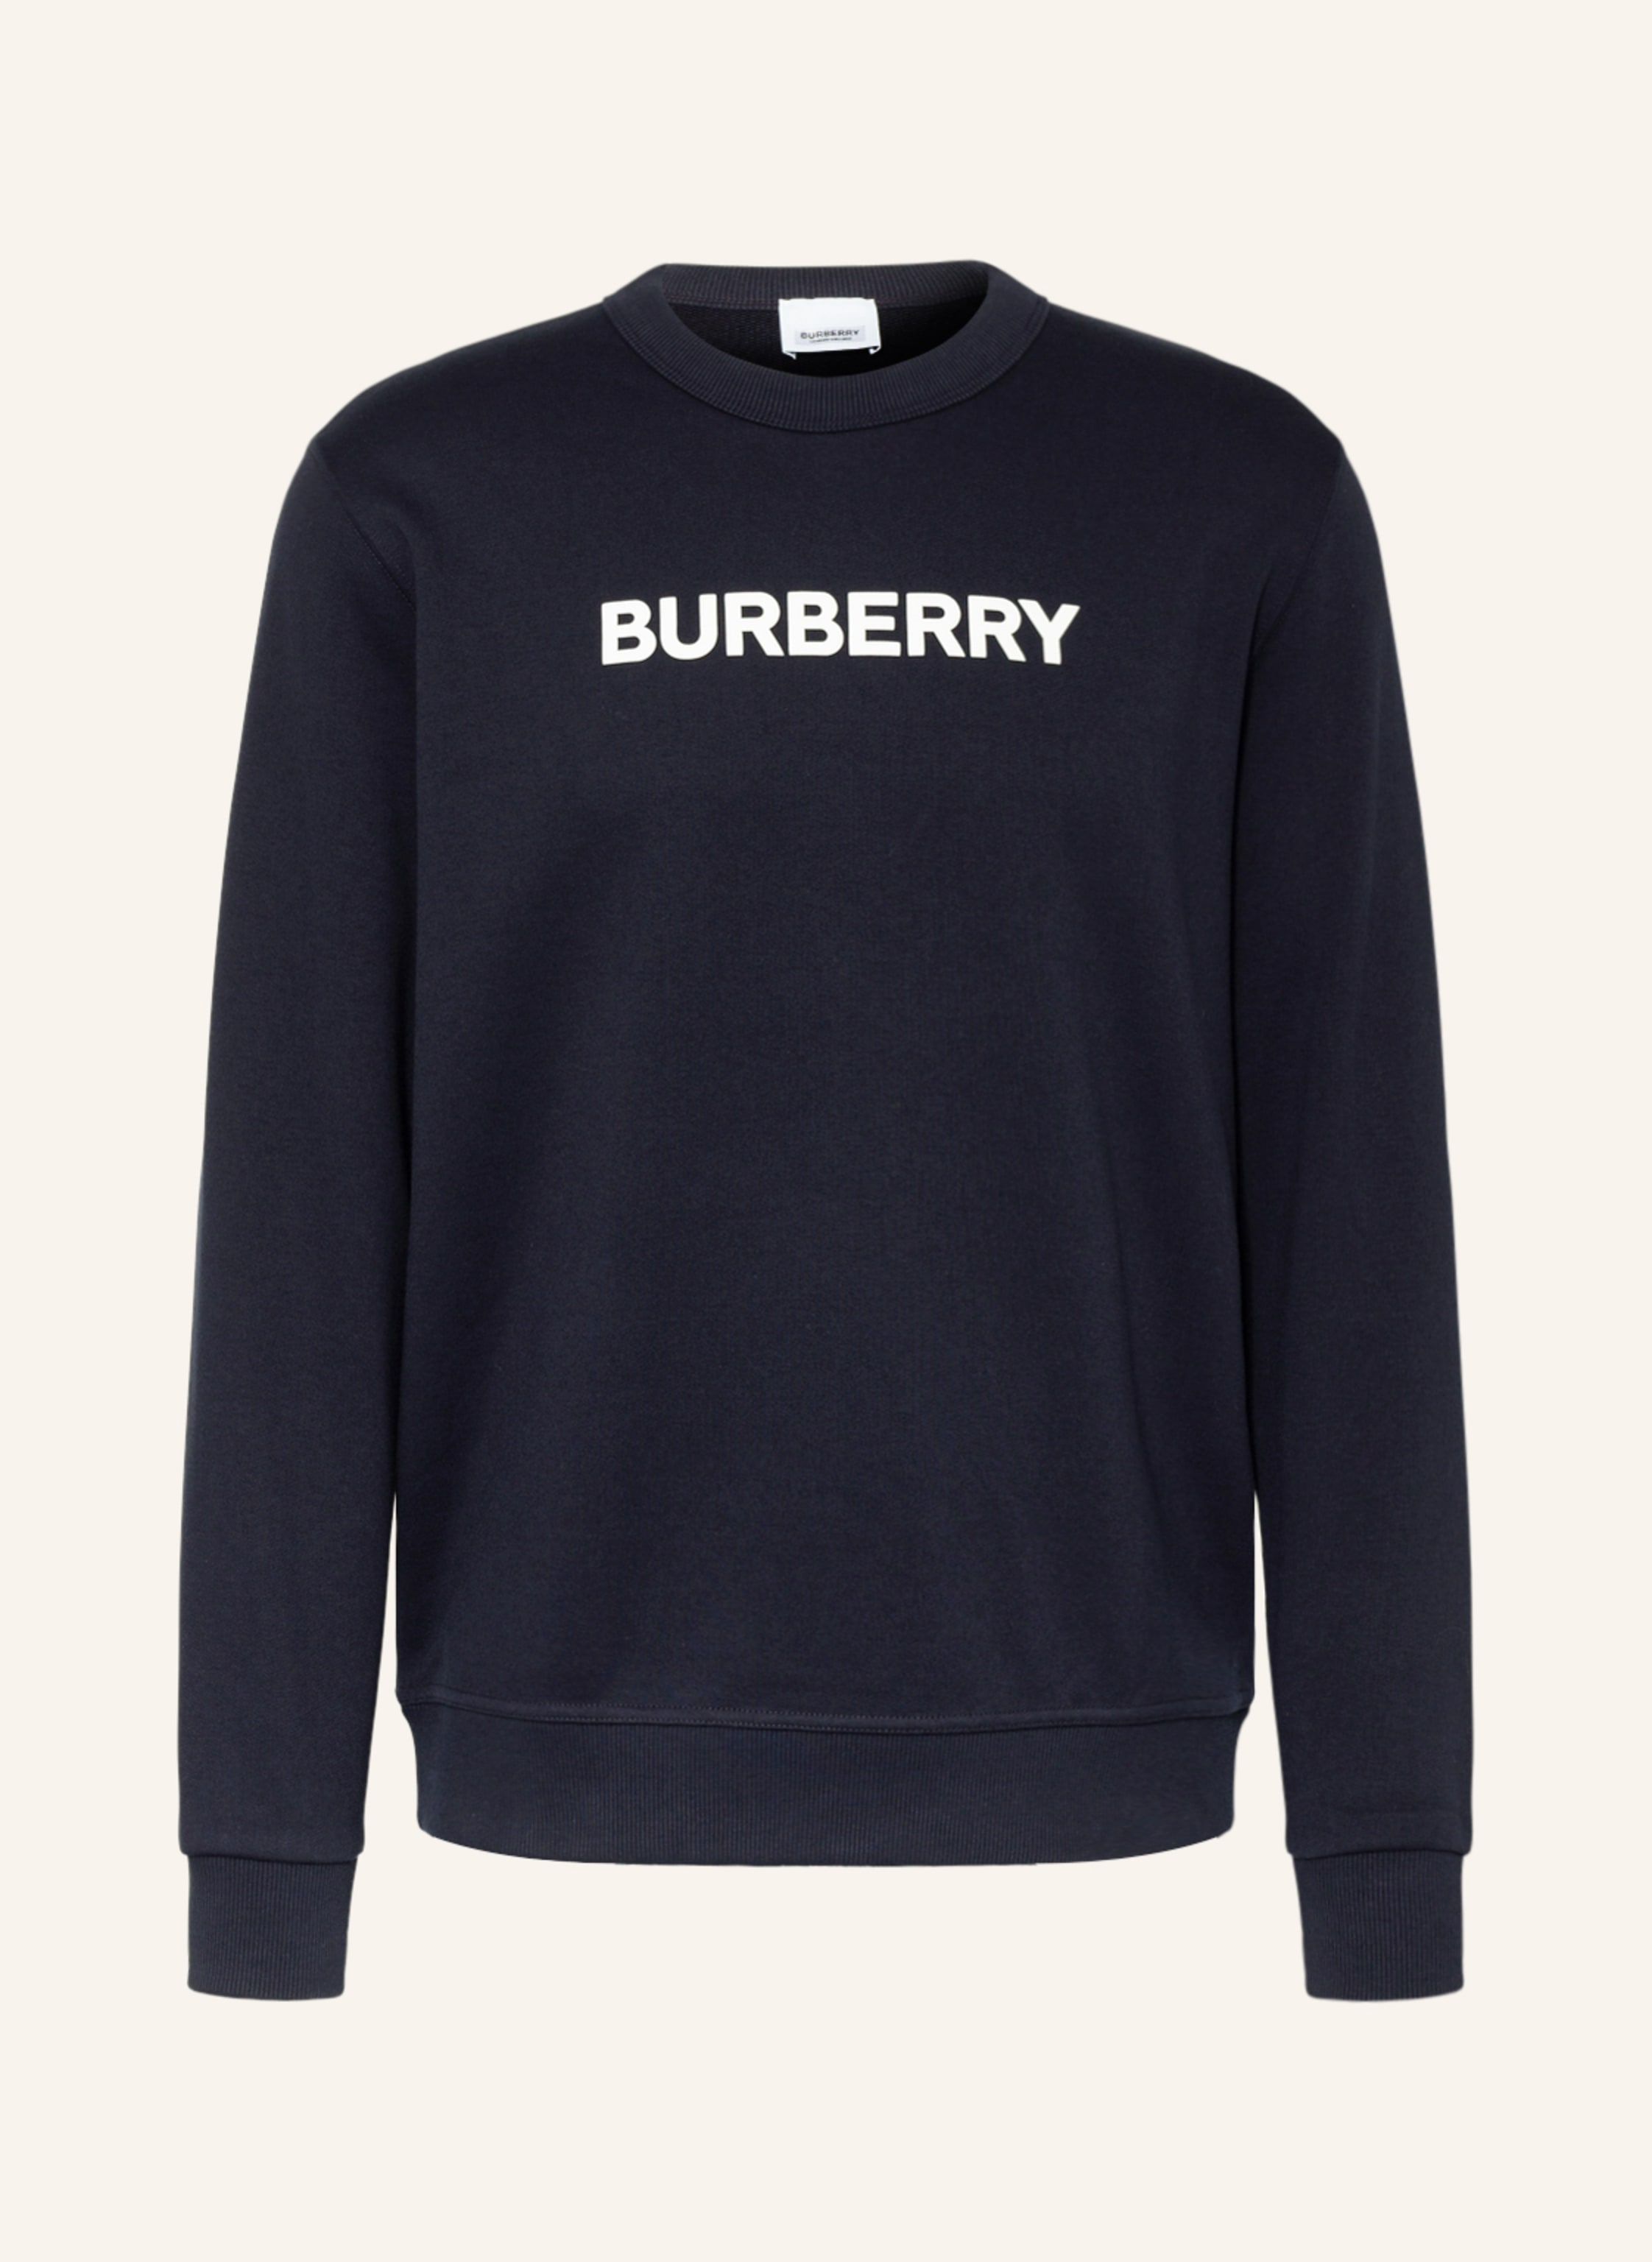 BURBERRY Sweatshirt BURLOW in dark blue | Breuninger